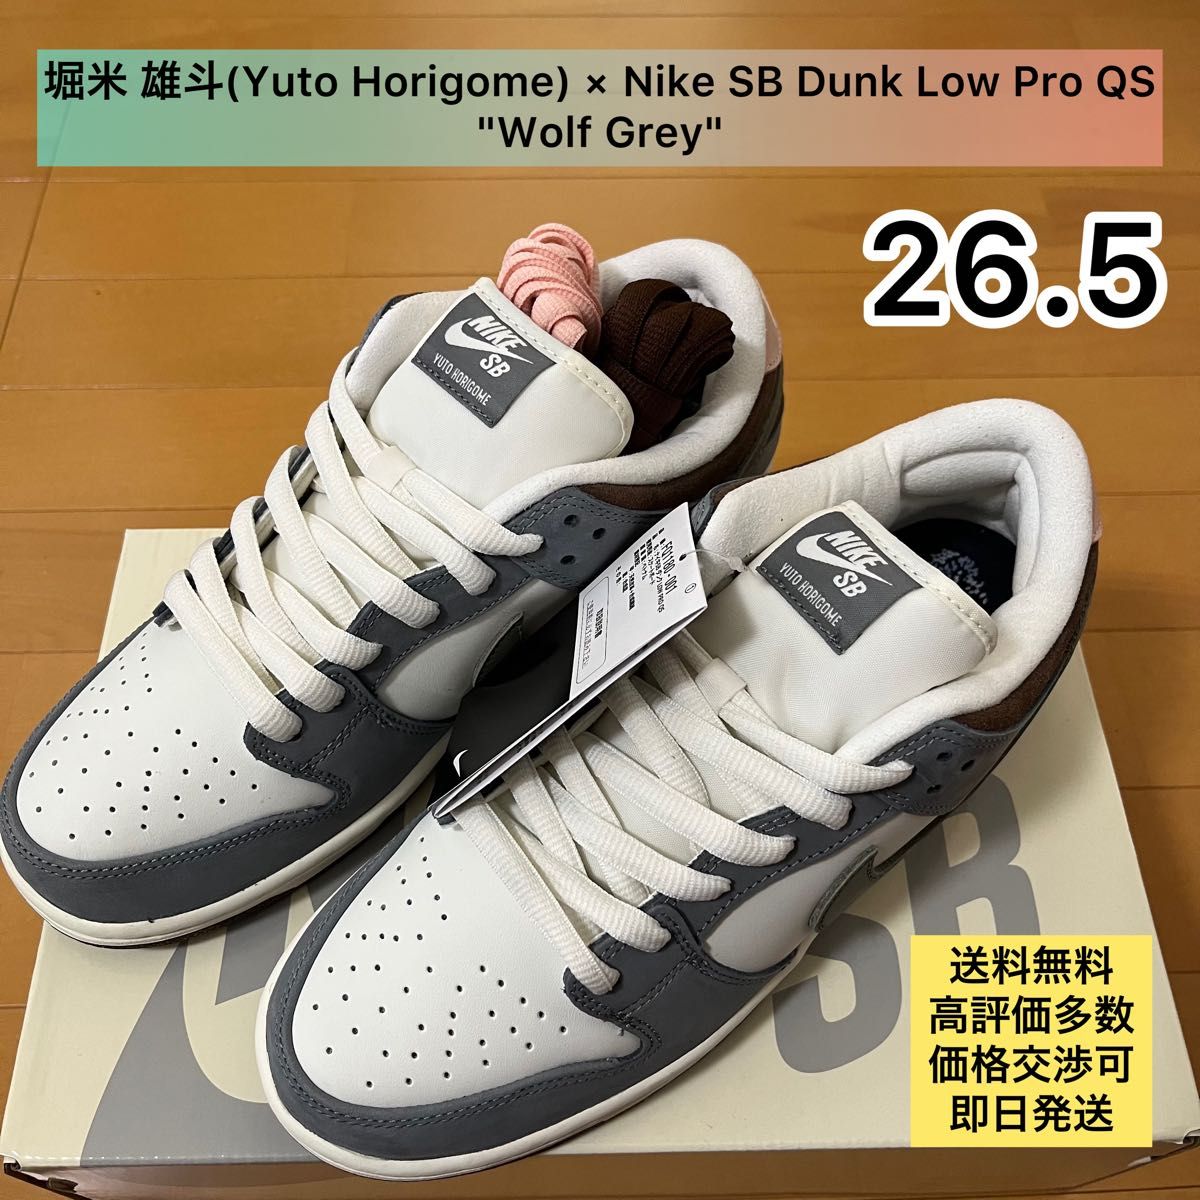 堀米 雄斗(Yuto Horigome) × Nike SB Dunk Low Pro QS 